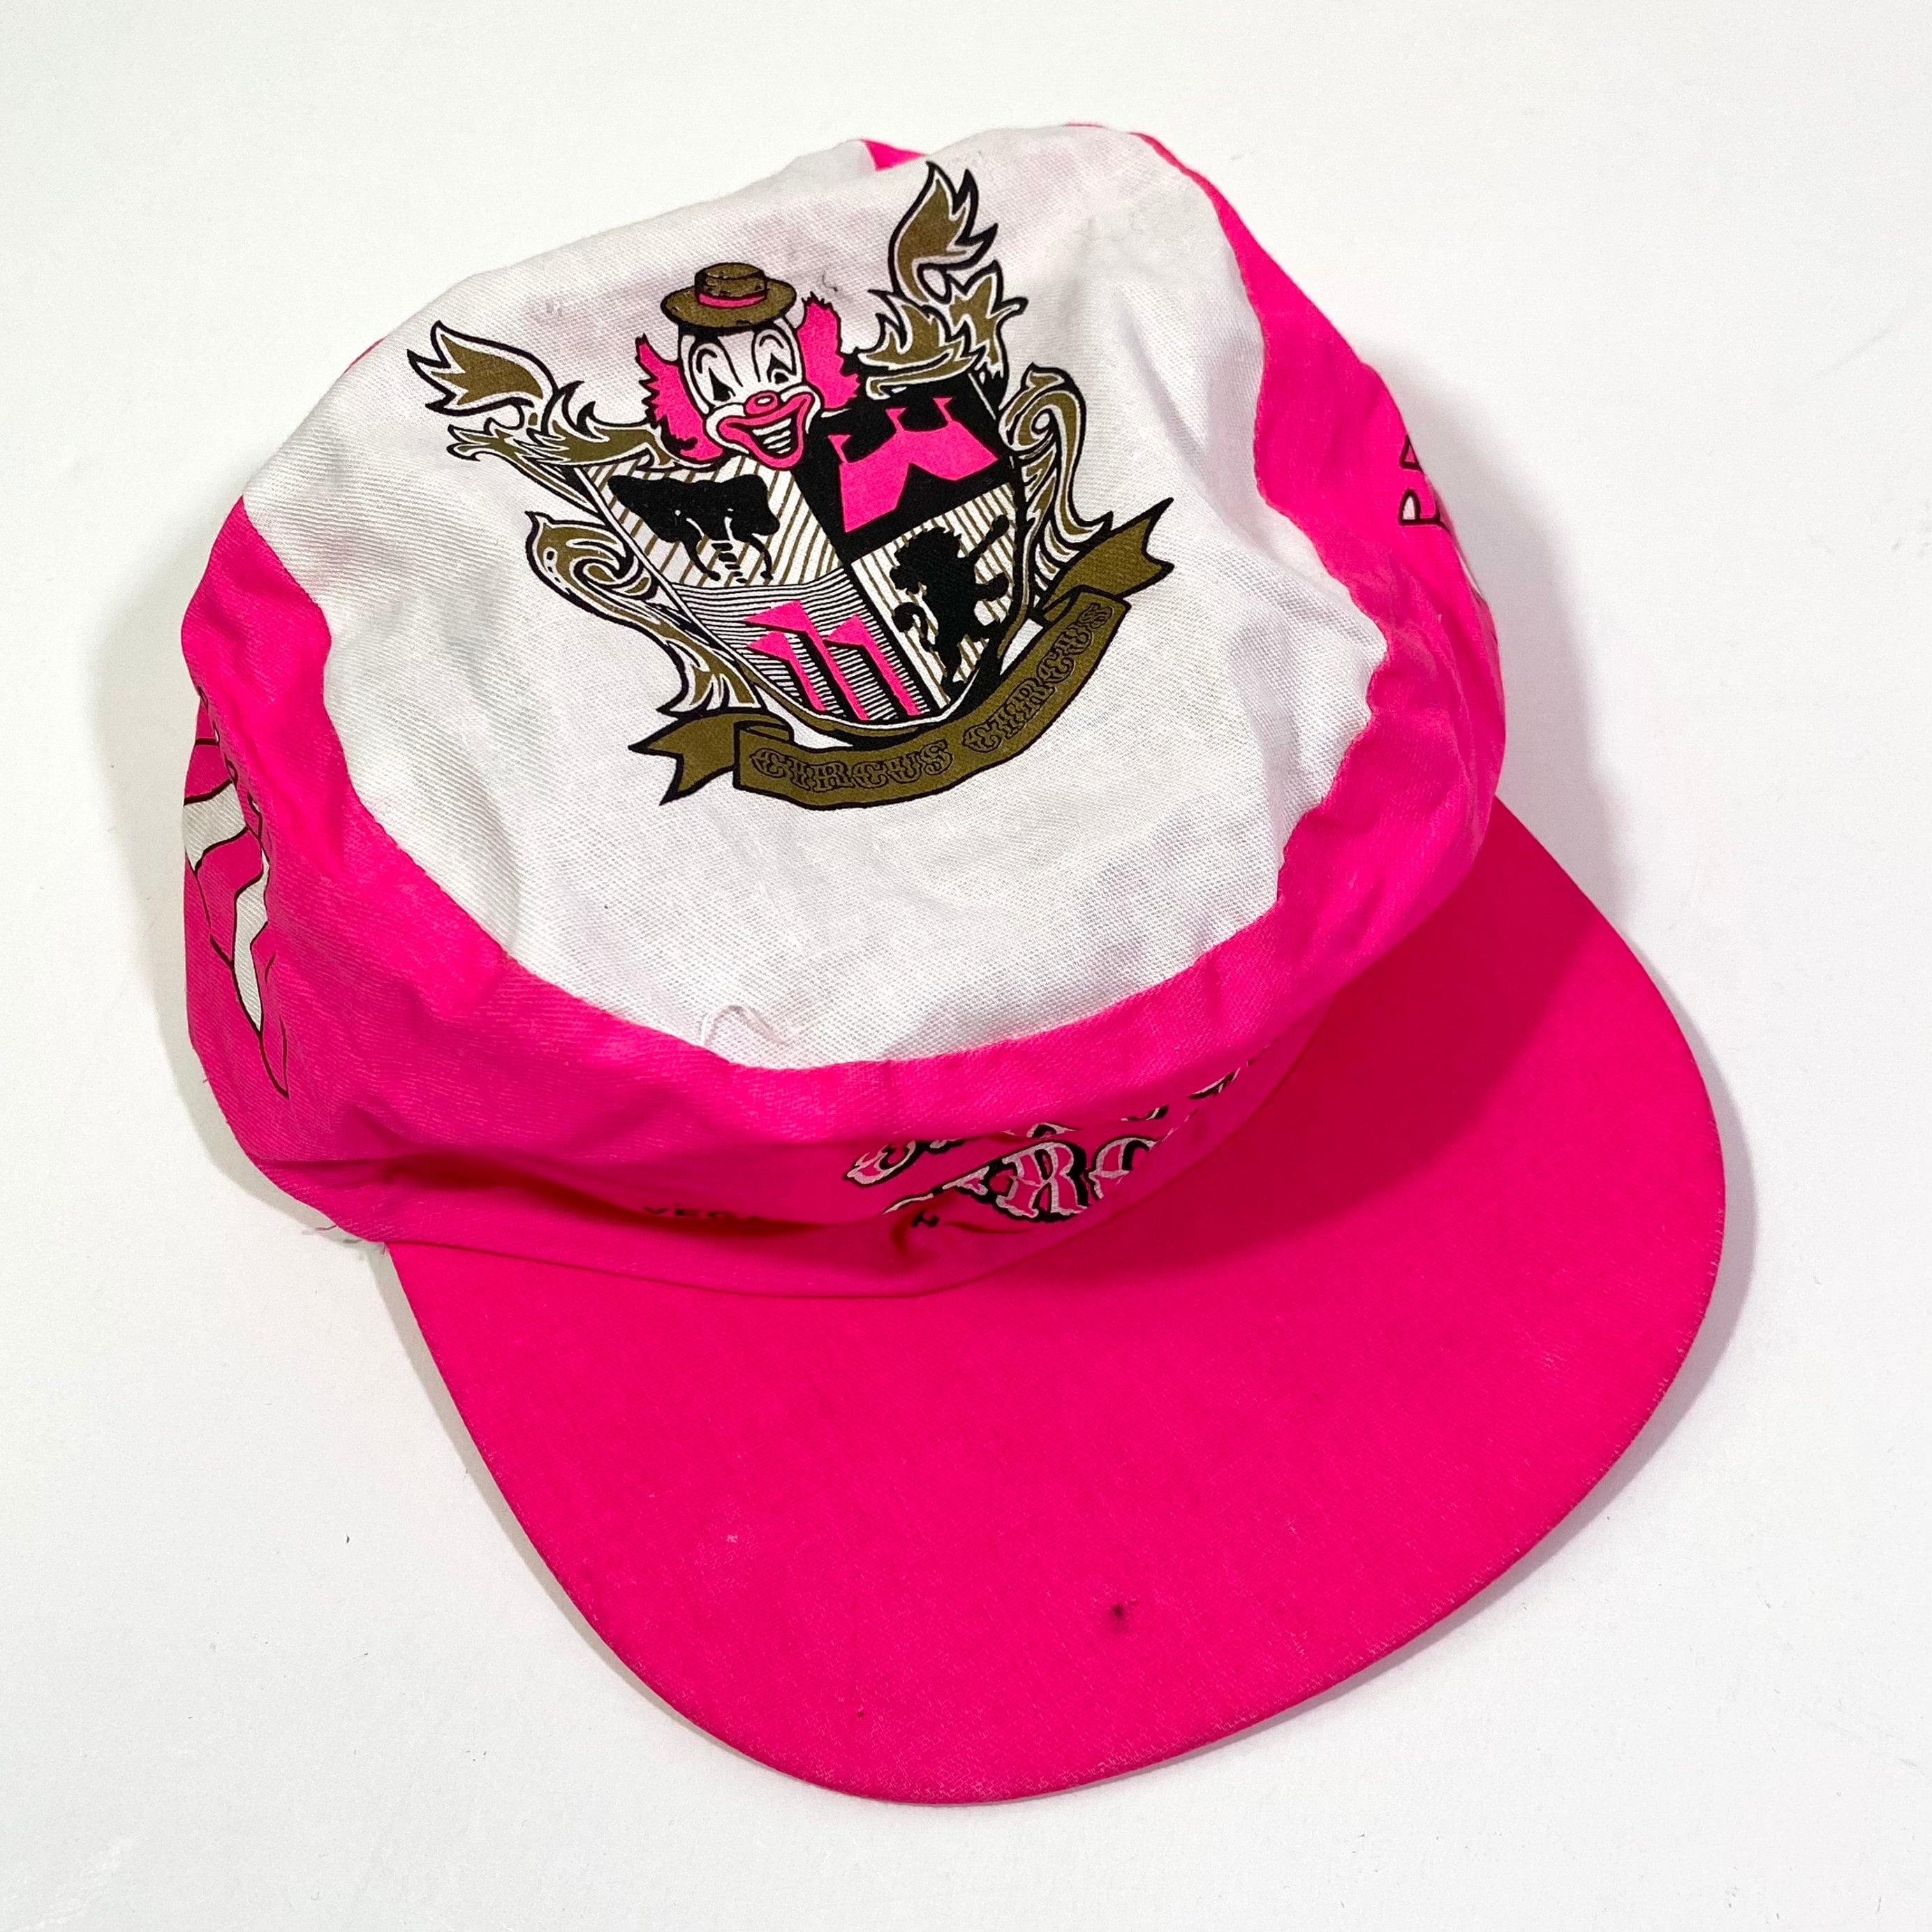 Las Vegas Souvenir Tan LV Baseball Cap- Las Vegas Gift Shop Souvenir Hats  online